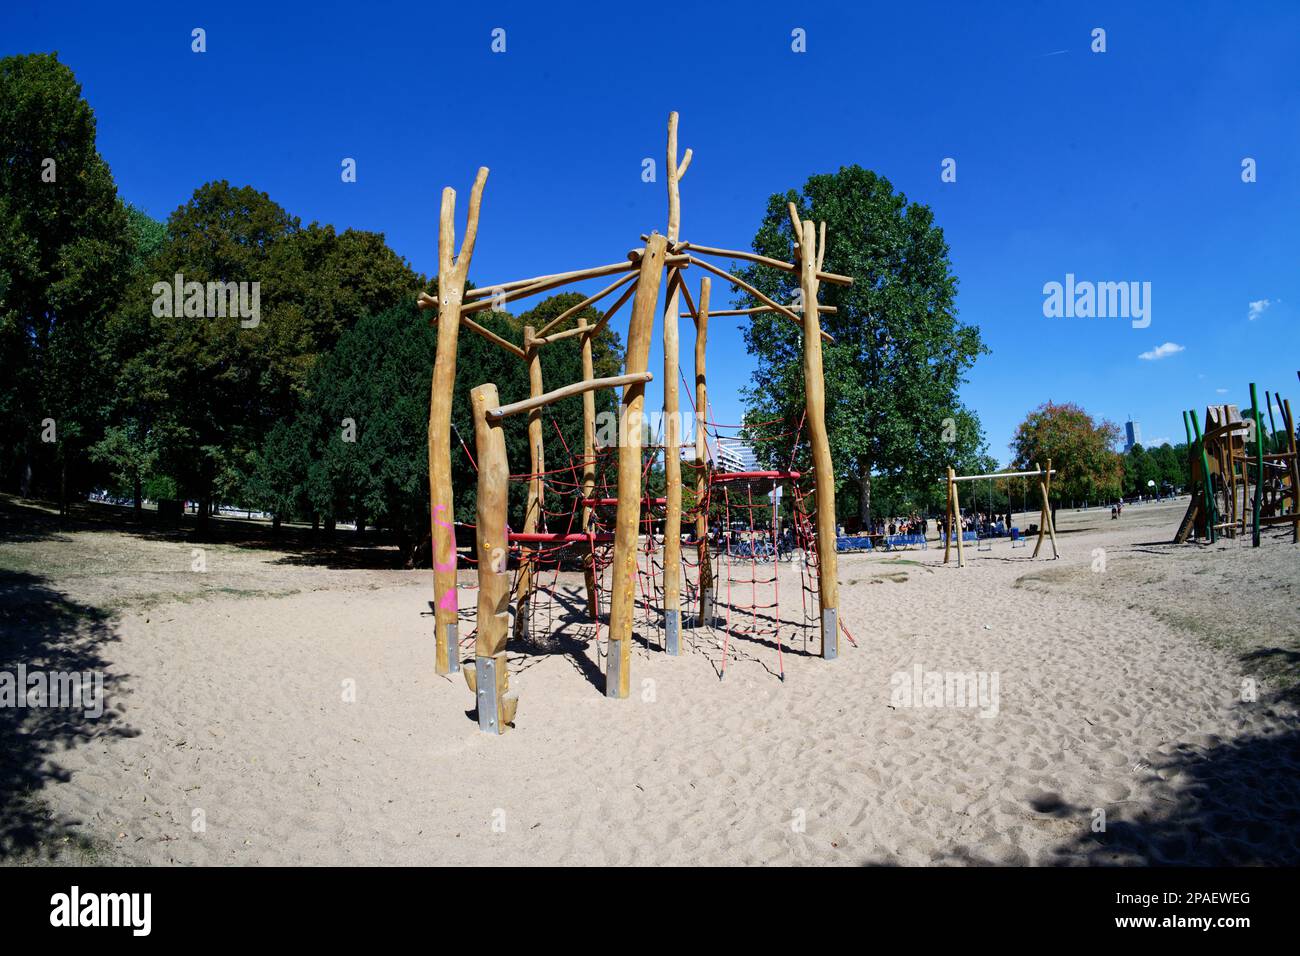 struttura in legno per arrampicata su un parco giochi con terreno sabbioso in un parco a colonia in una giornata di sole Foto Stock